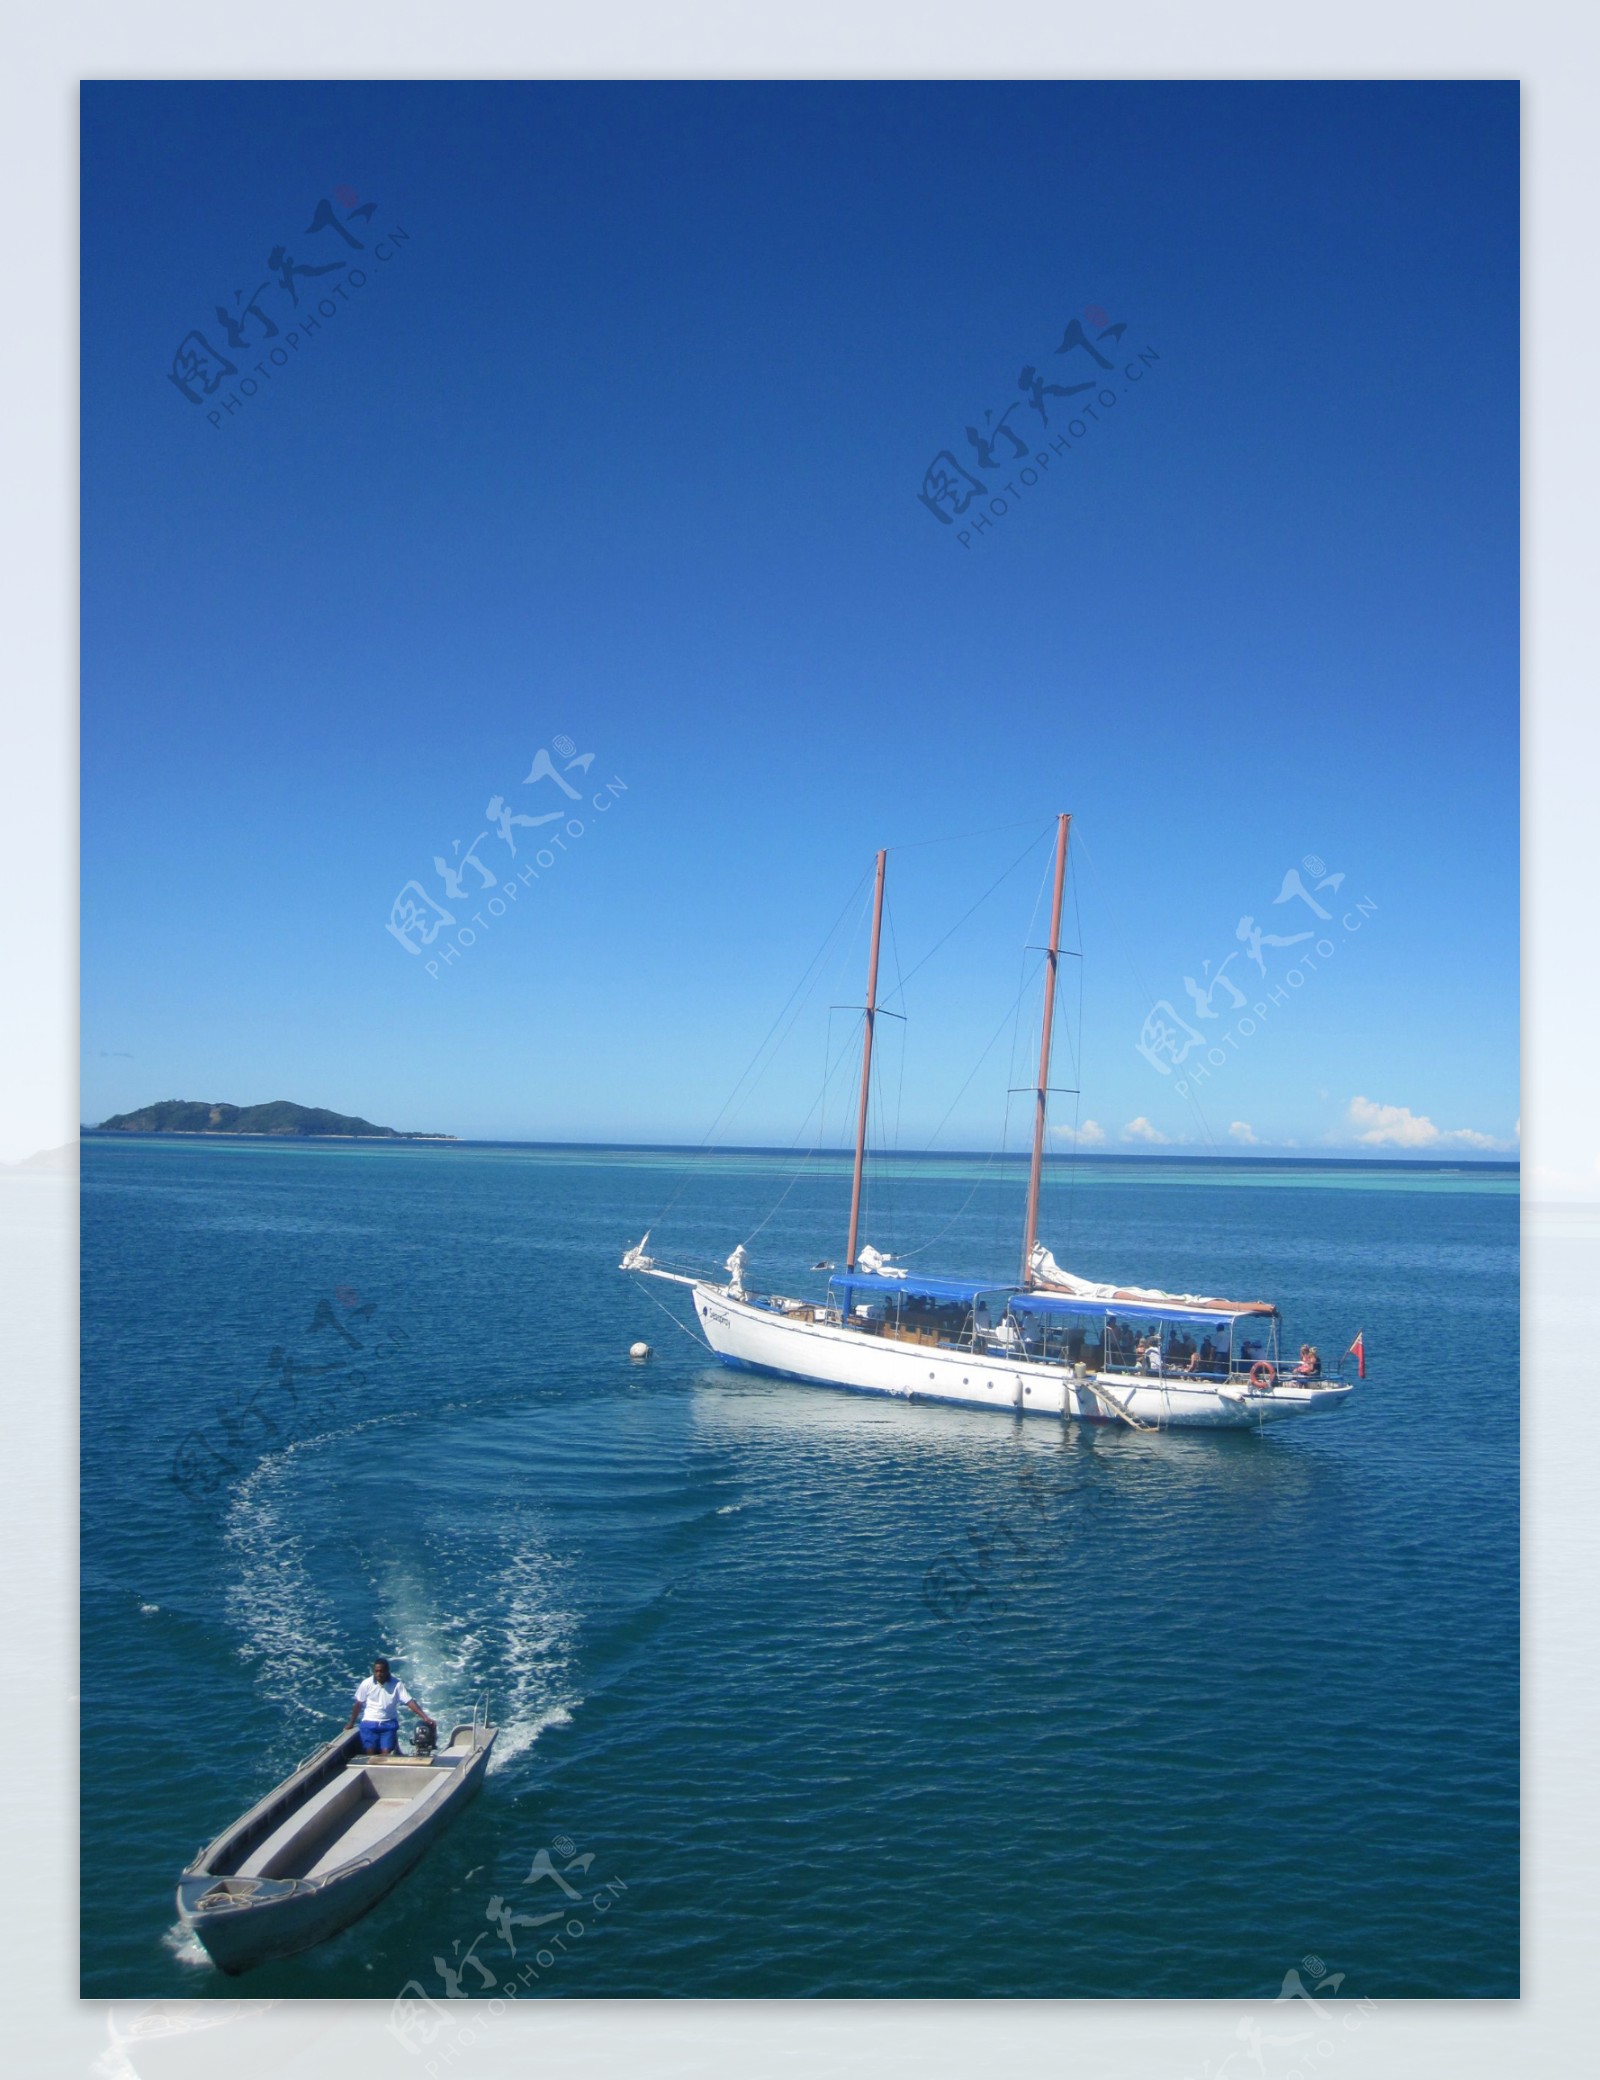 斐济科罗岛海边风光图片